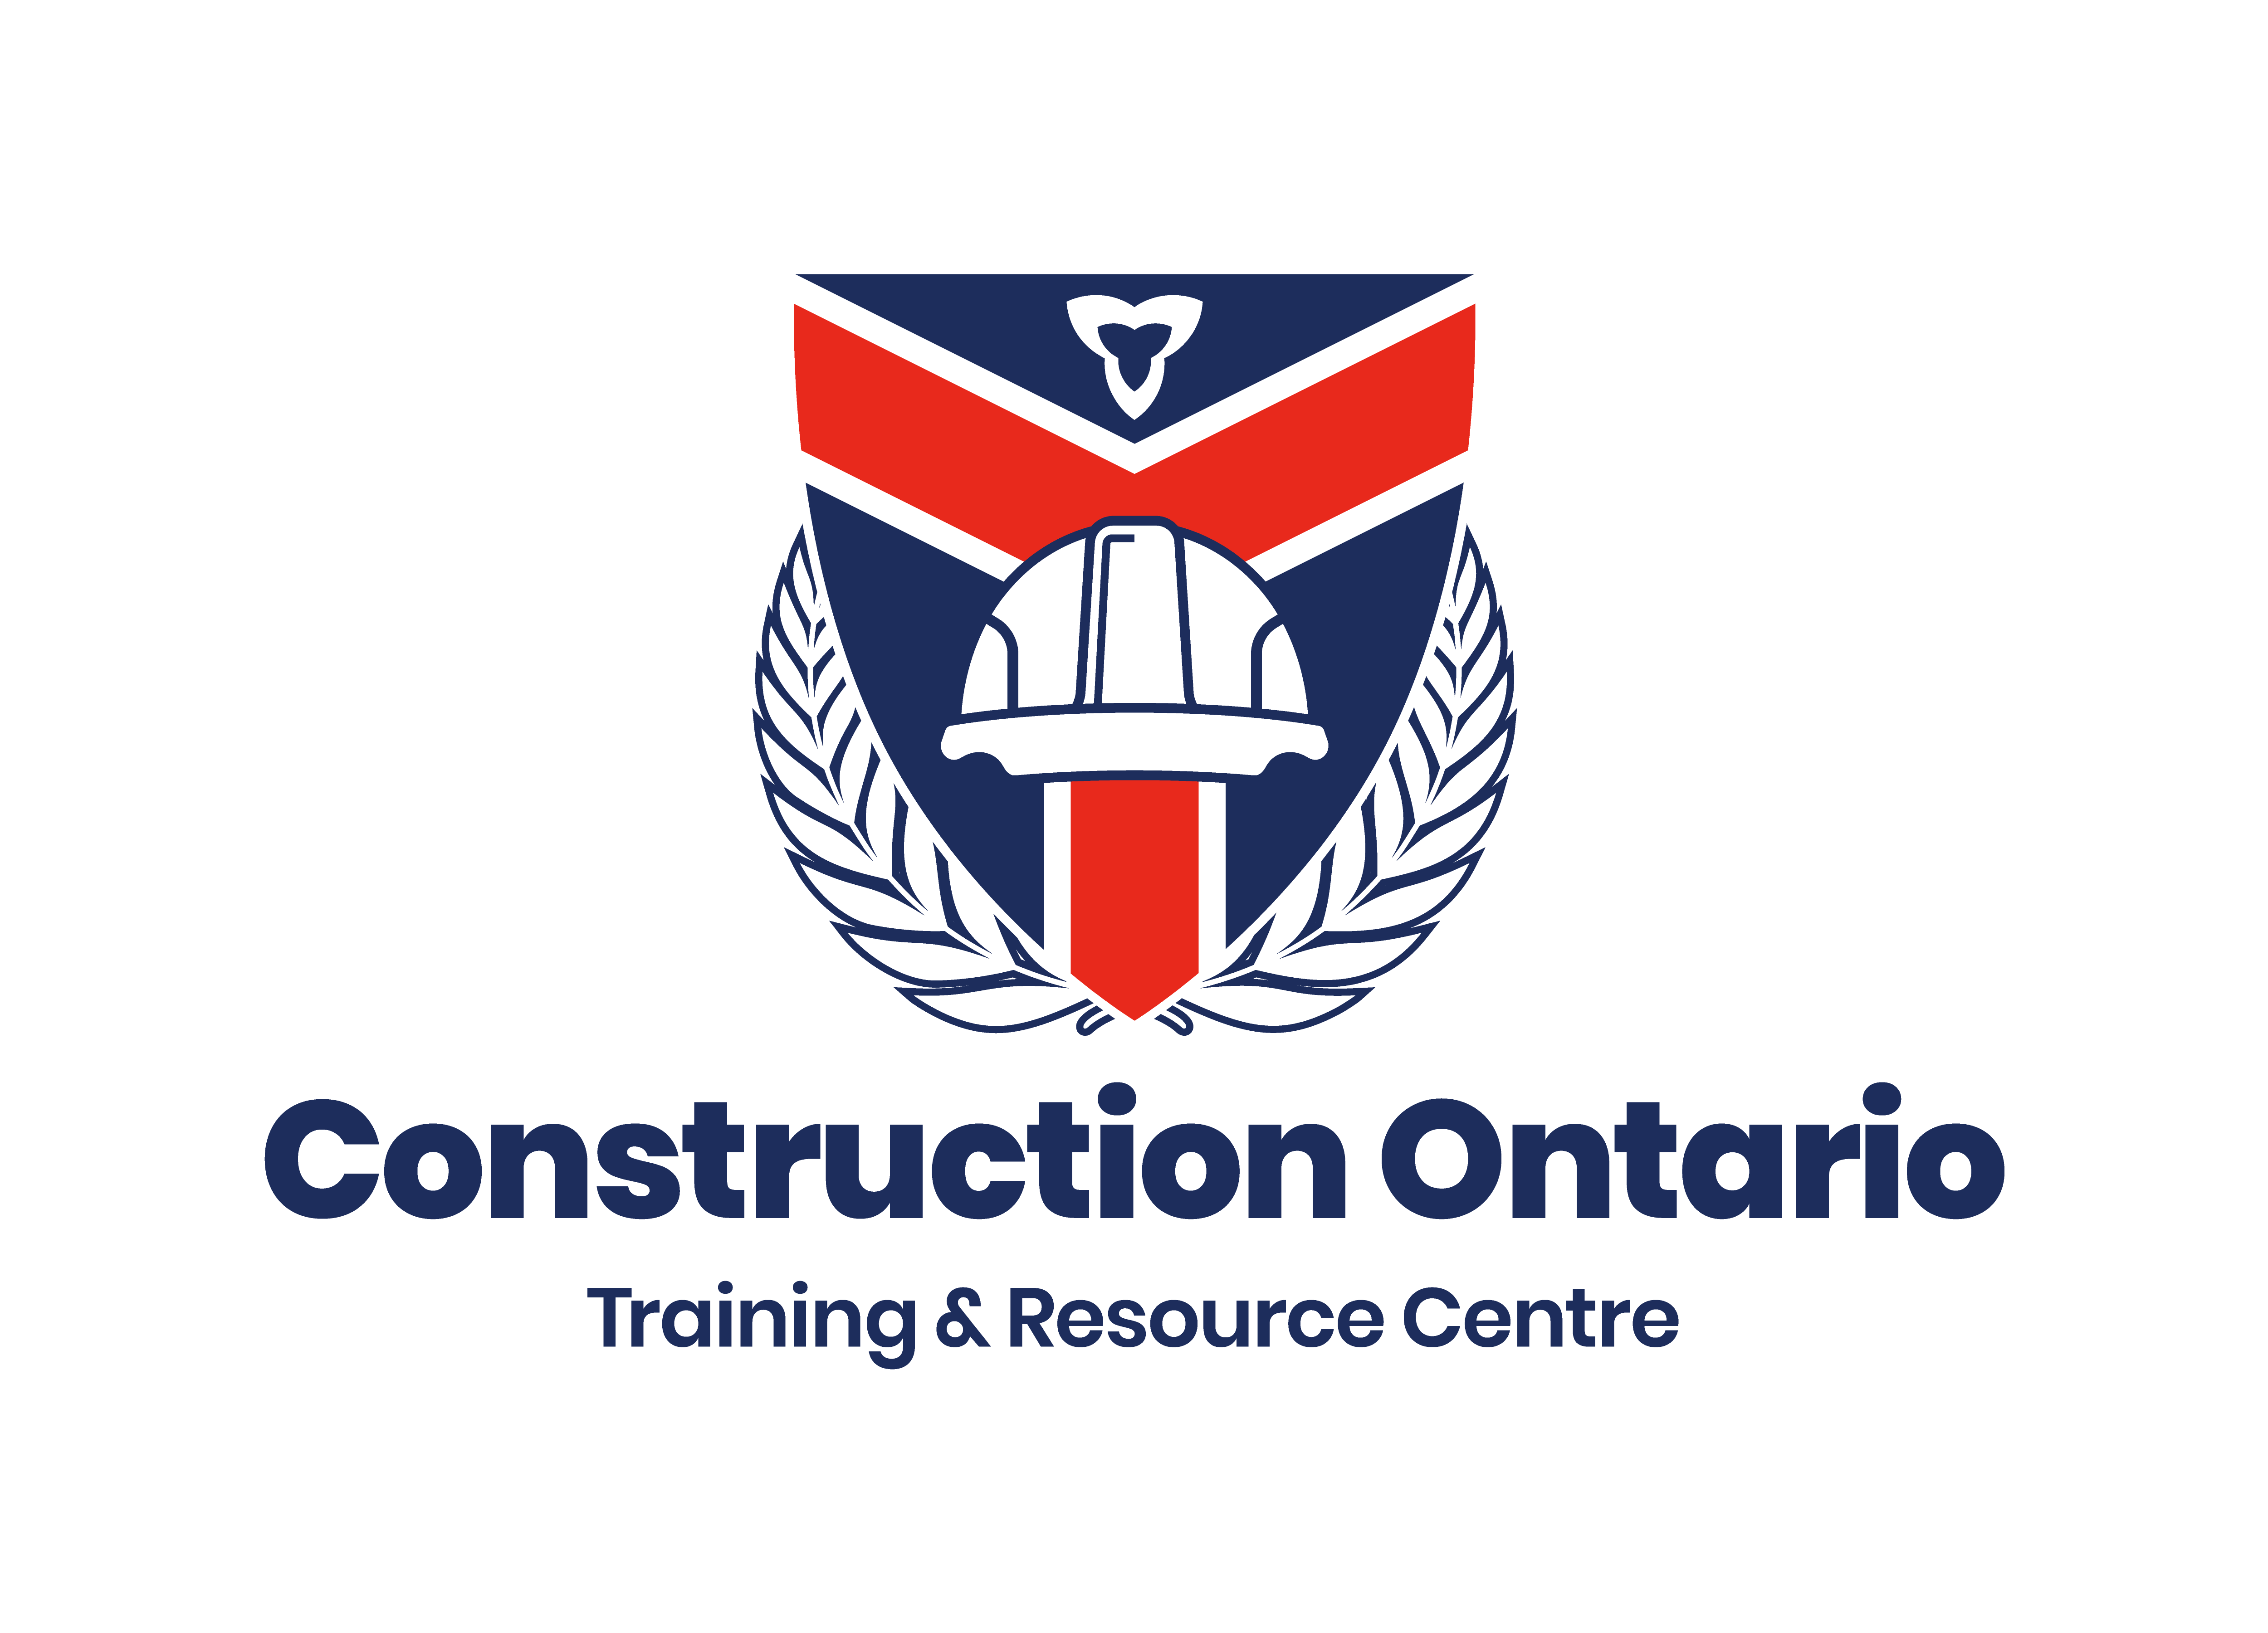 Construction Ontario/Trades for Tomorrow